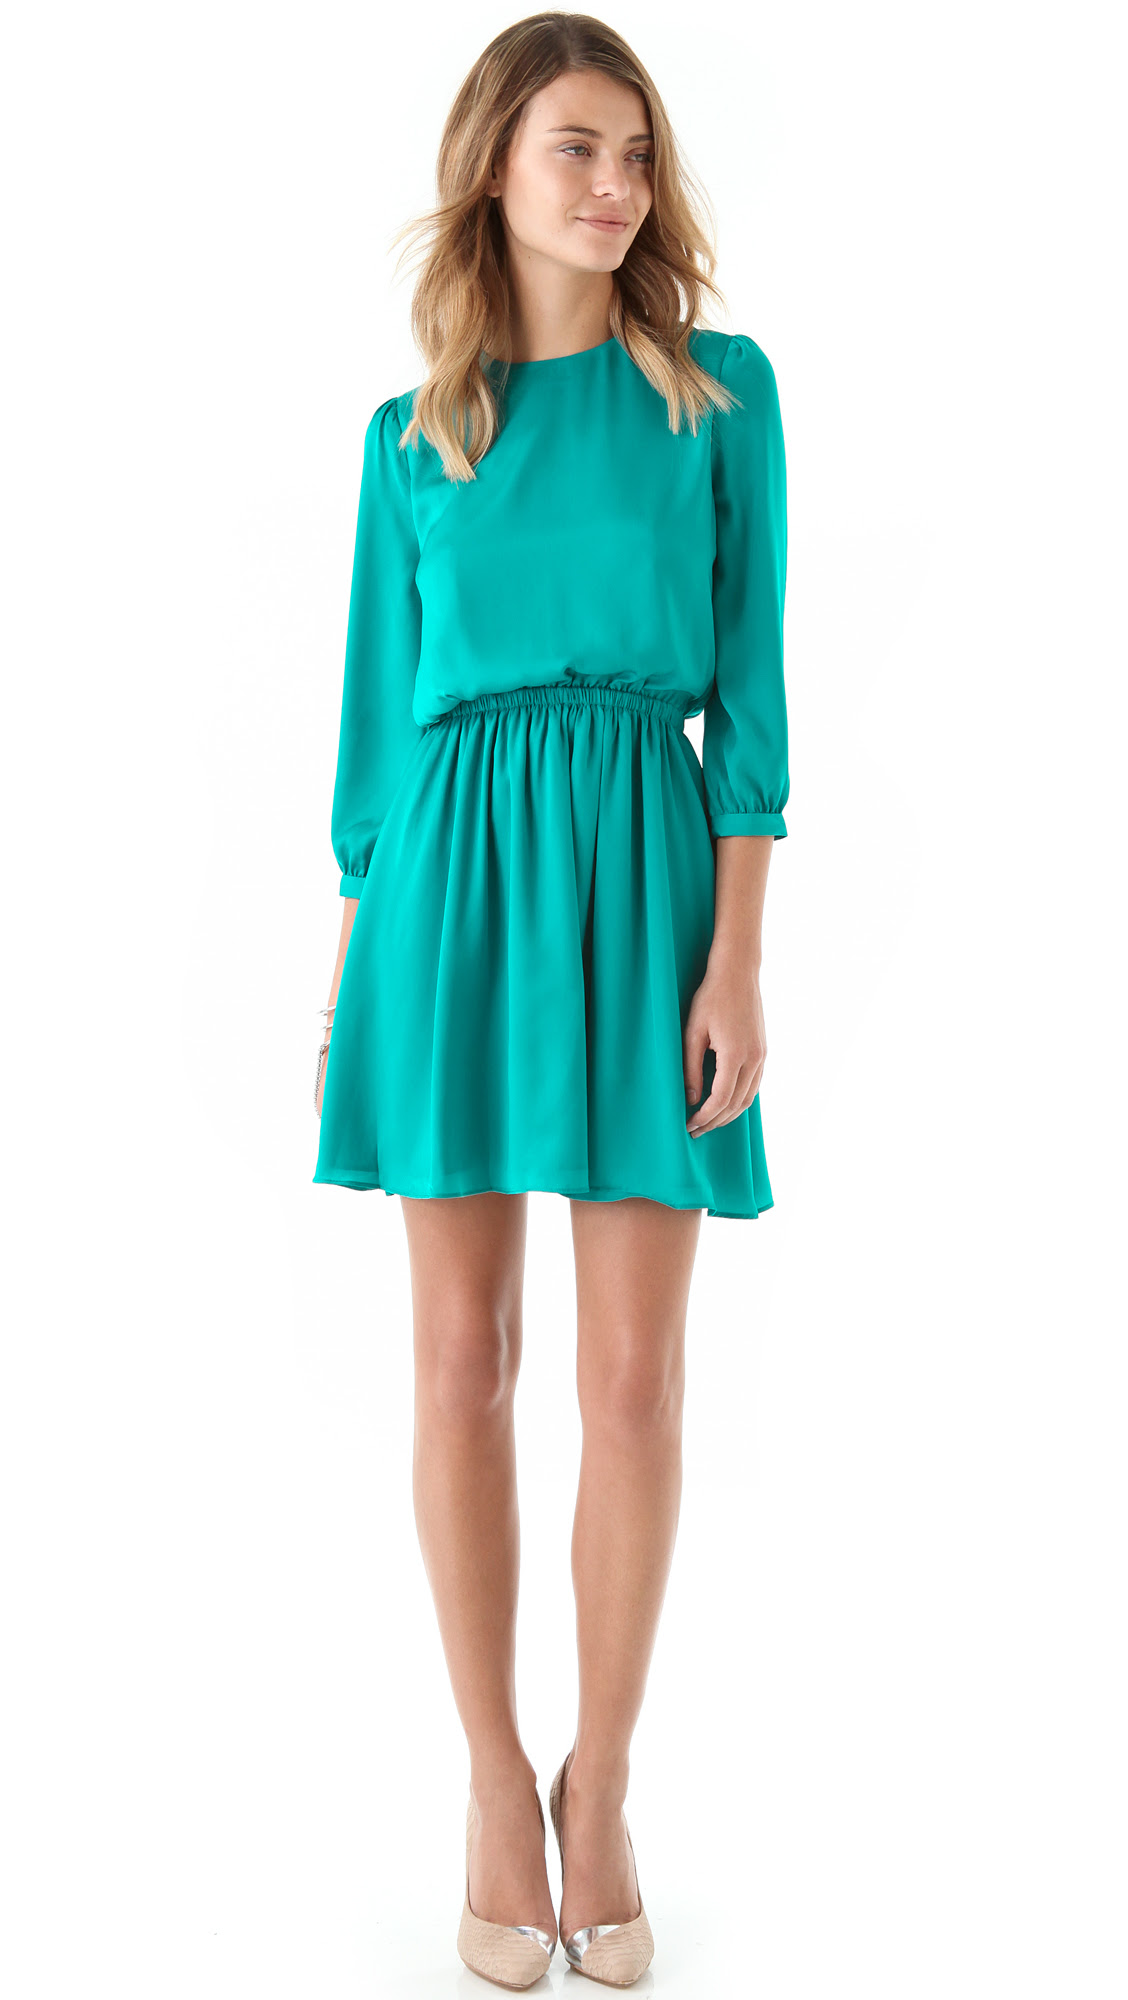 Aqua Green Dress : Aqua Lime Green Metallic Hi Low Strapless Gown Short